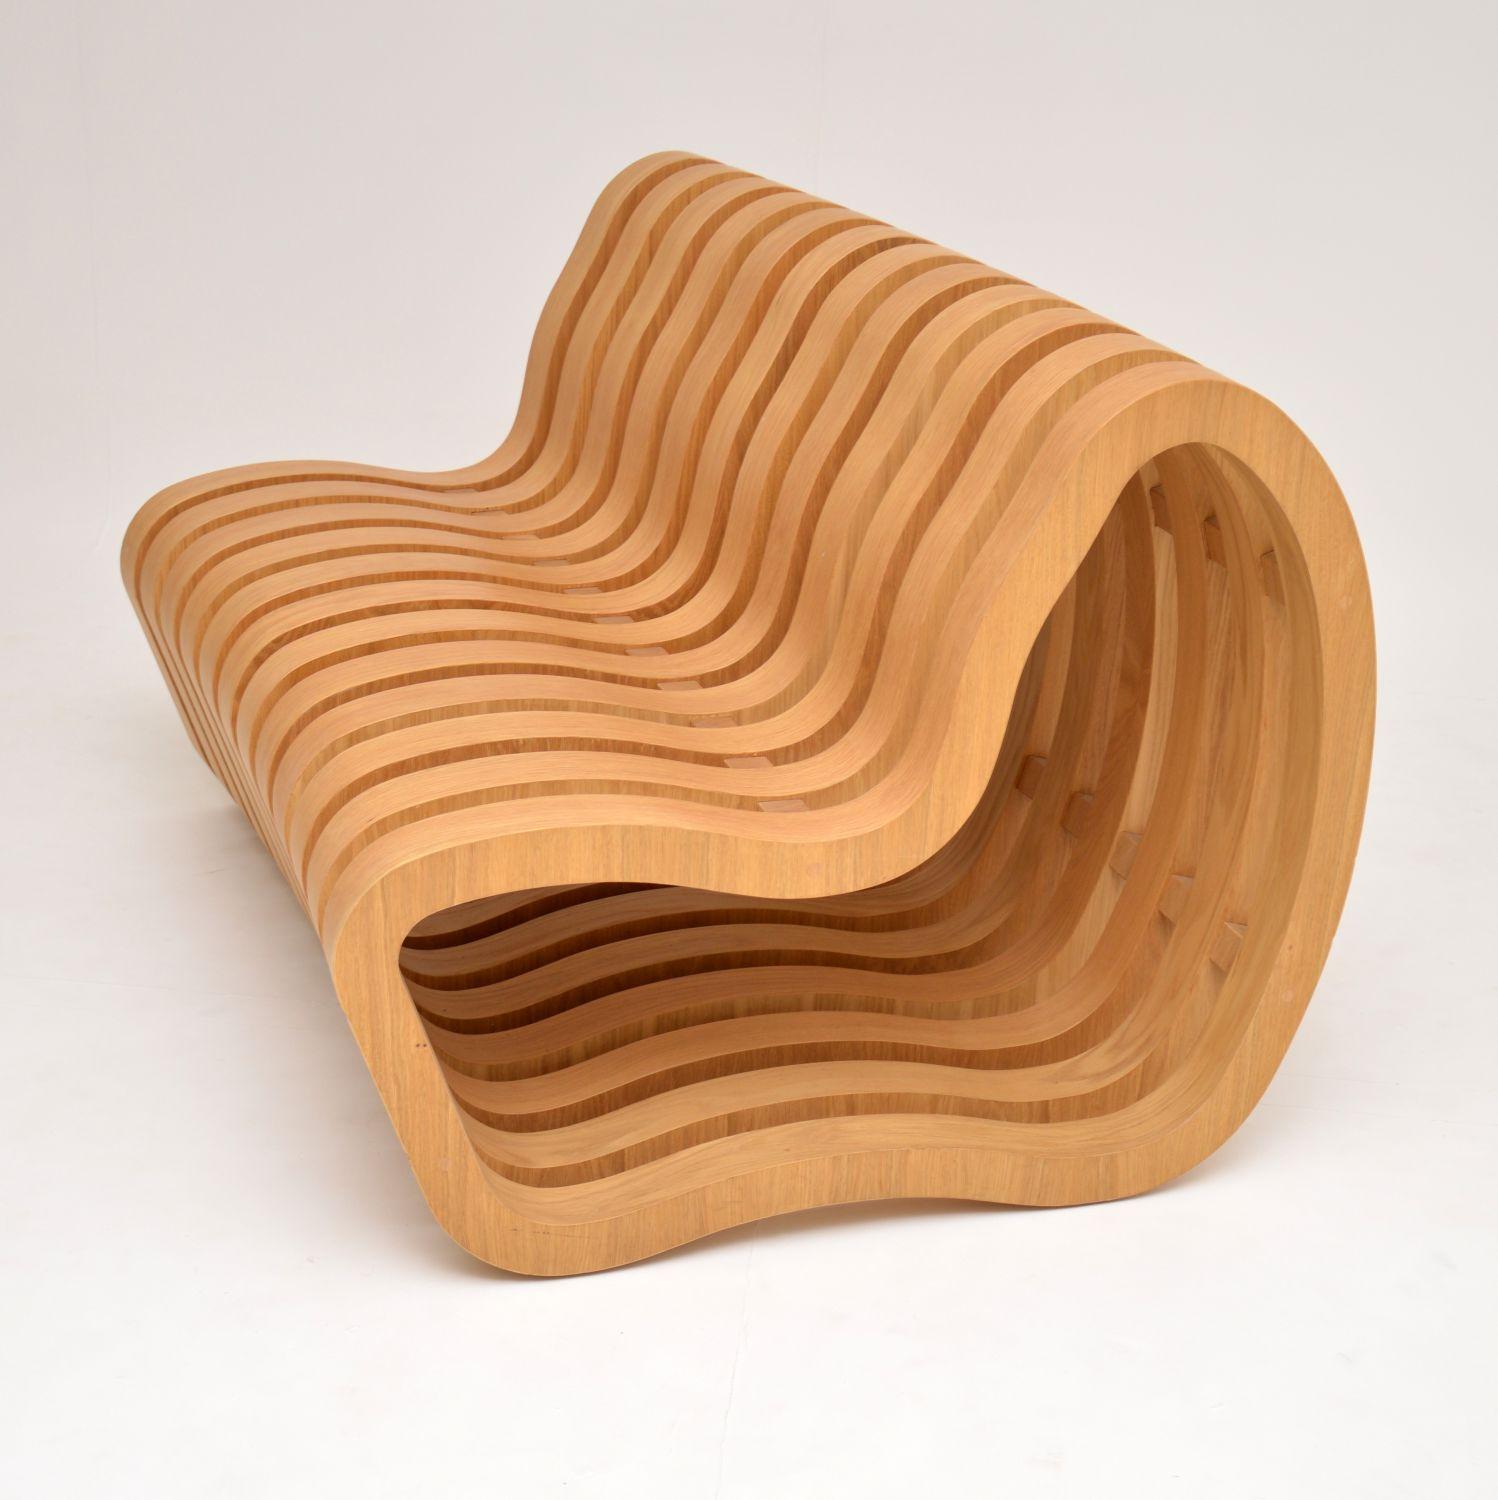 Modernist “Curve Bench” by Nina Moeller Designs 1